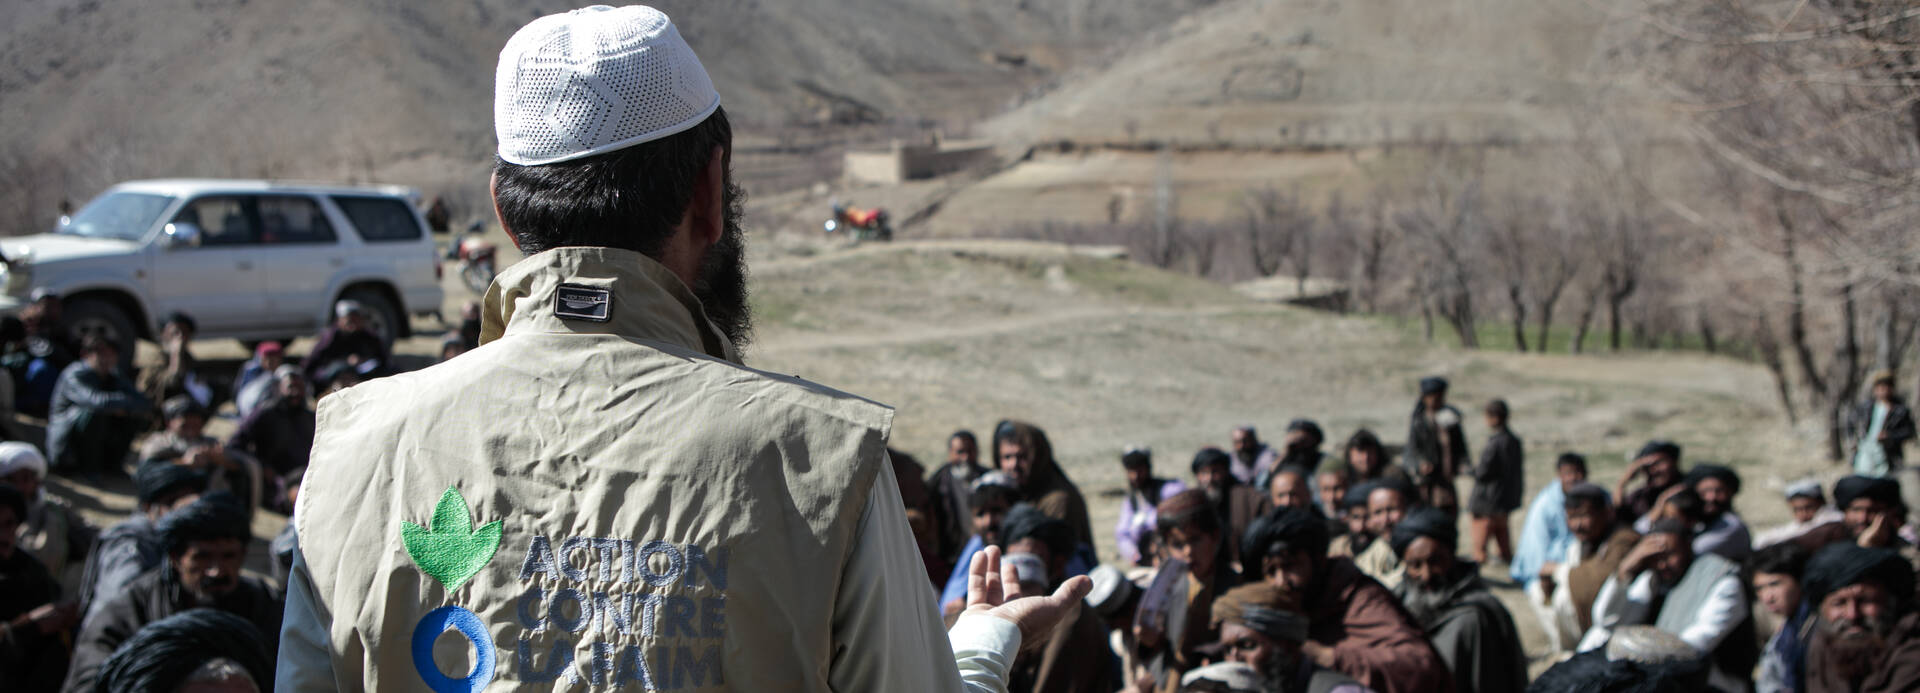 Ein Mitarbeiter von Aktion gegen den Hunger spricht vor einer Menschengruppe in Afghanistan.